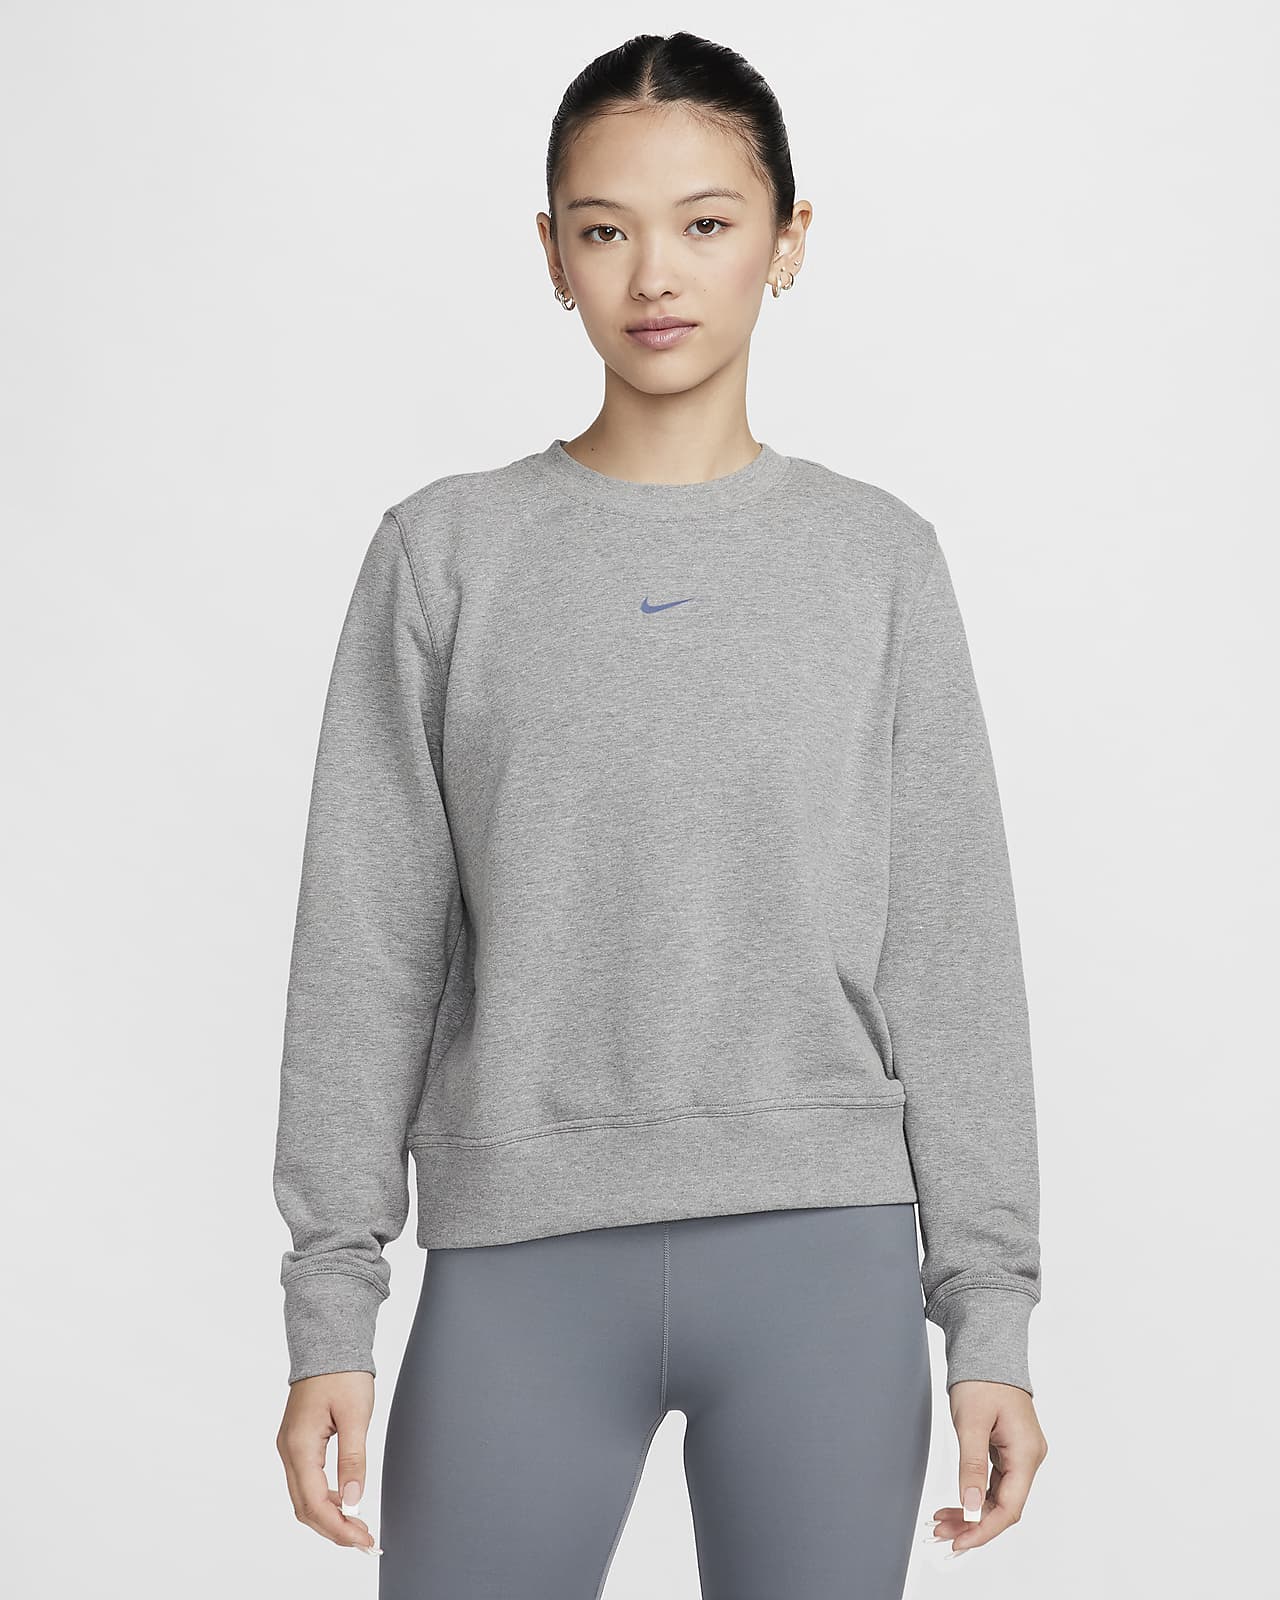 Nike Dri-FIT One 女款圓領法國毛圈布運動衫